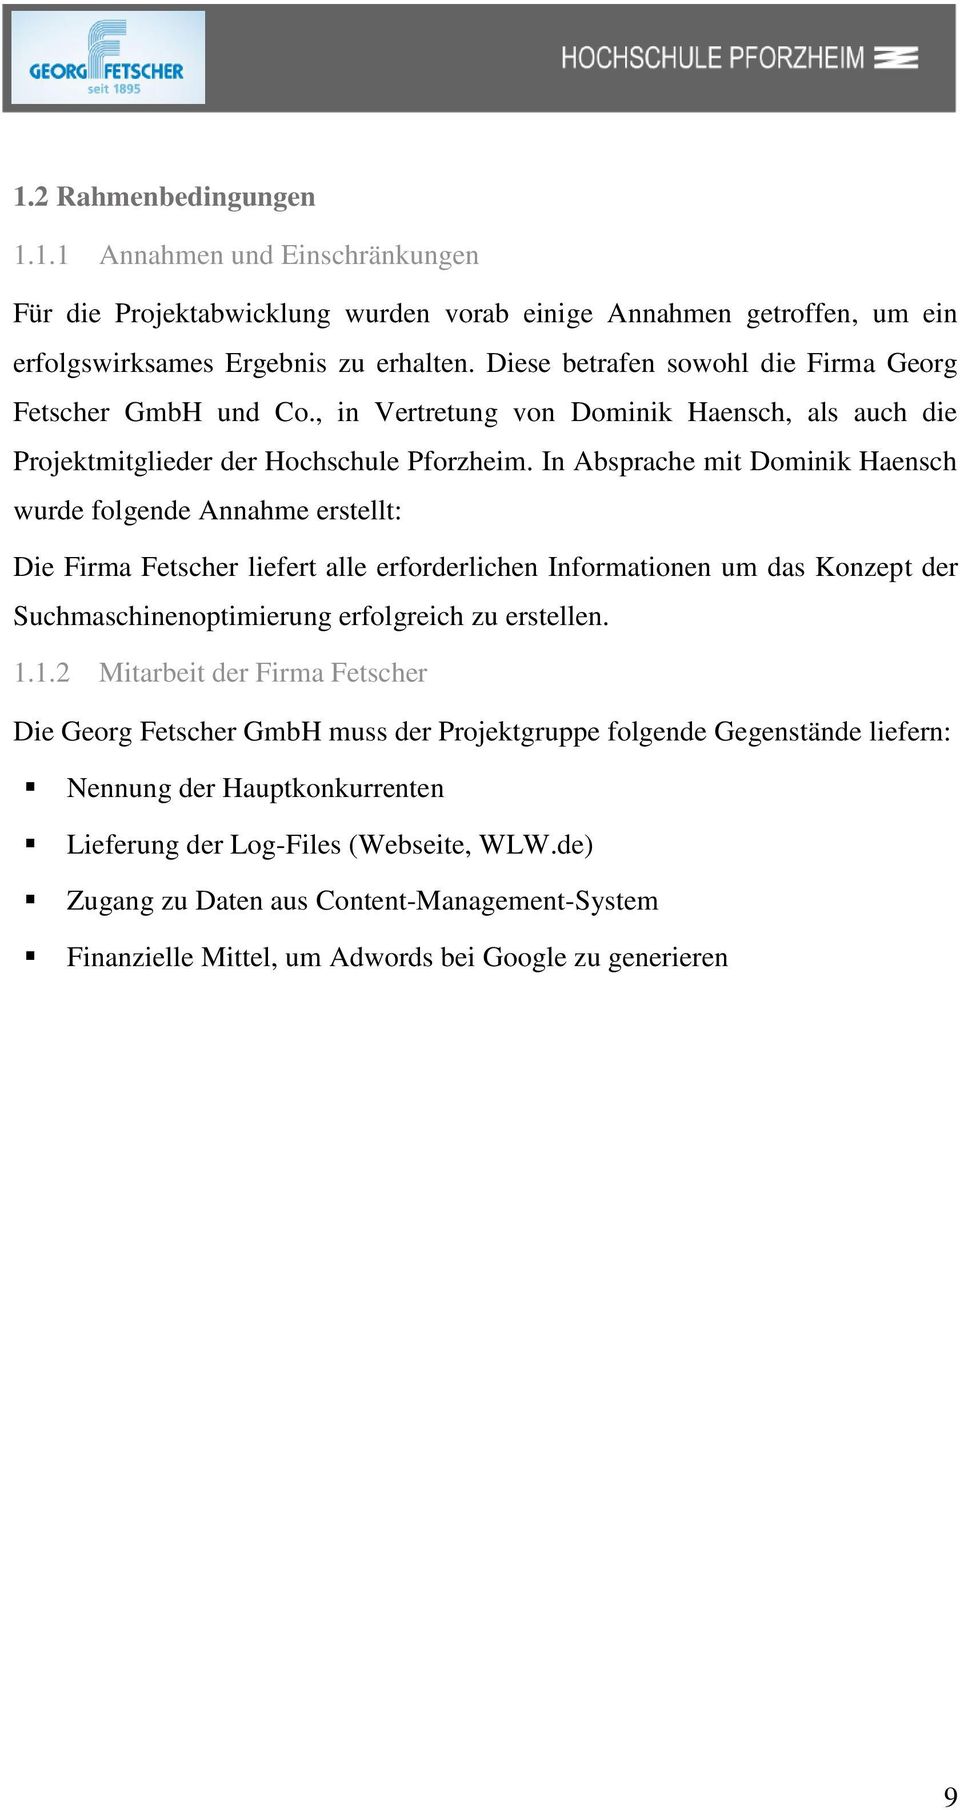 In Absprache mit Dominik Haensch wurde folgende Annahme erstellt: Die Firma Fetscher liefert alle erforderlichen Informationen um das Konzept der Suchmaschinenoptimierung erfolgreich zu erstellen. 1.